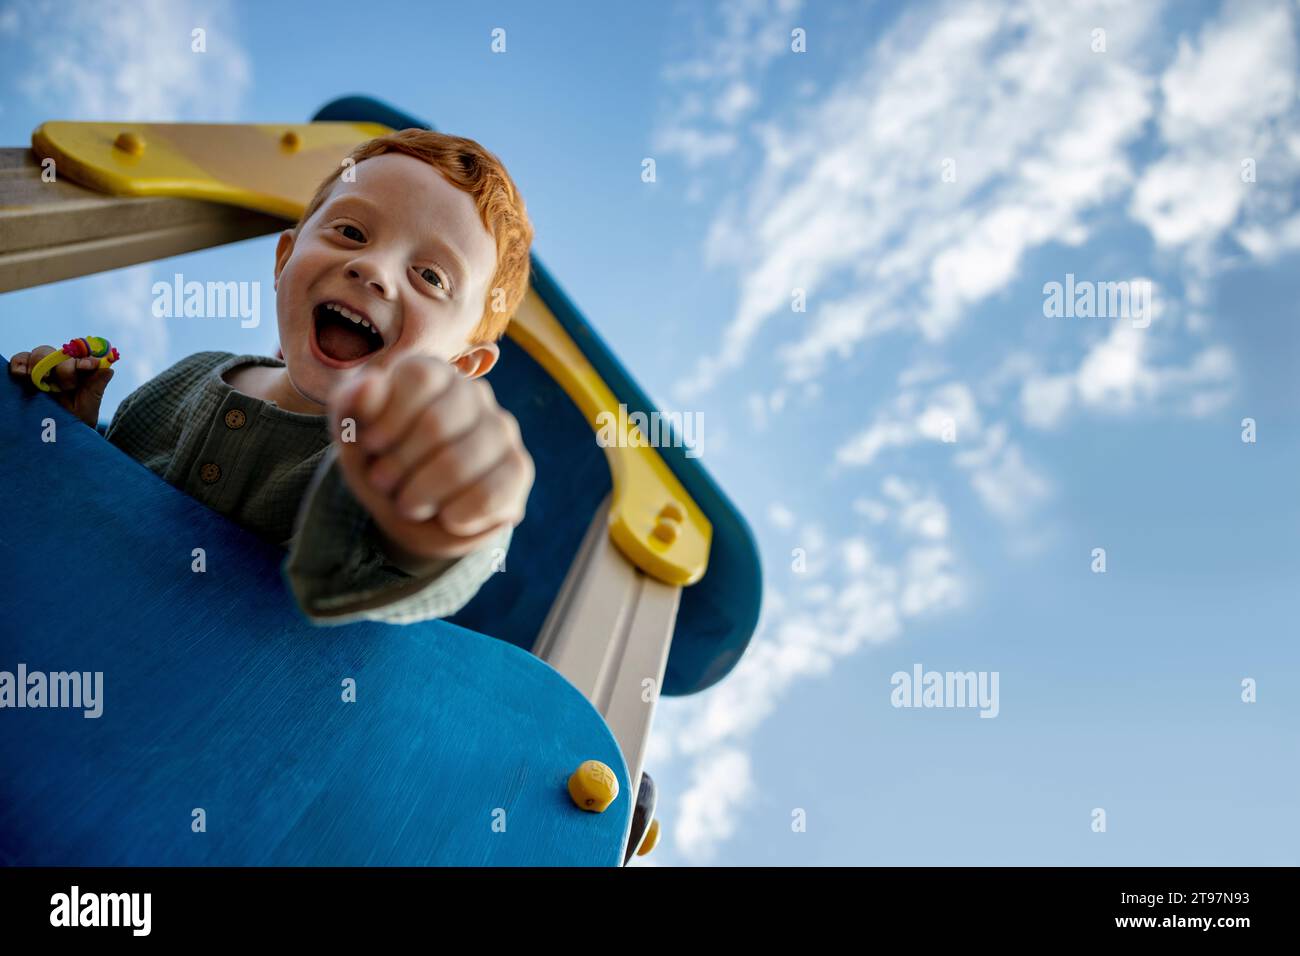 Fröhlicher Junge mit offenem Mund auf Spielgeräten unter dem Himmel Stockfoto